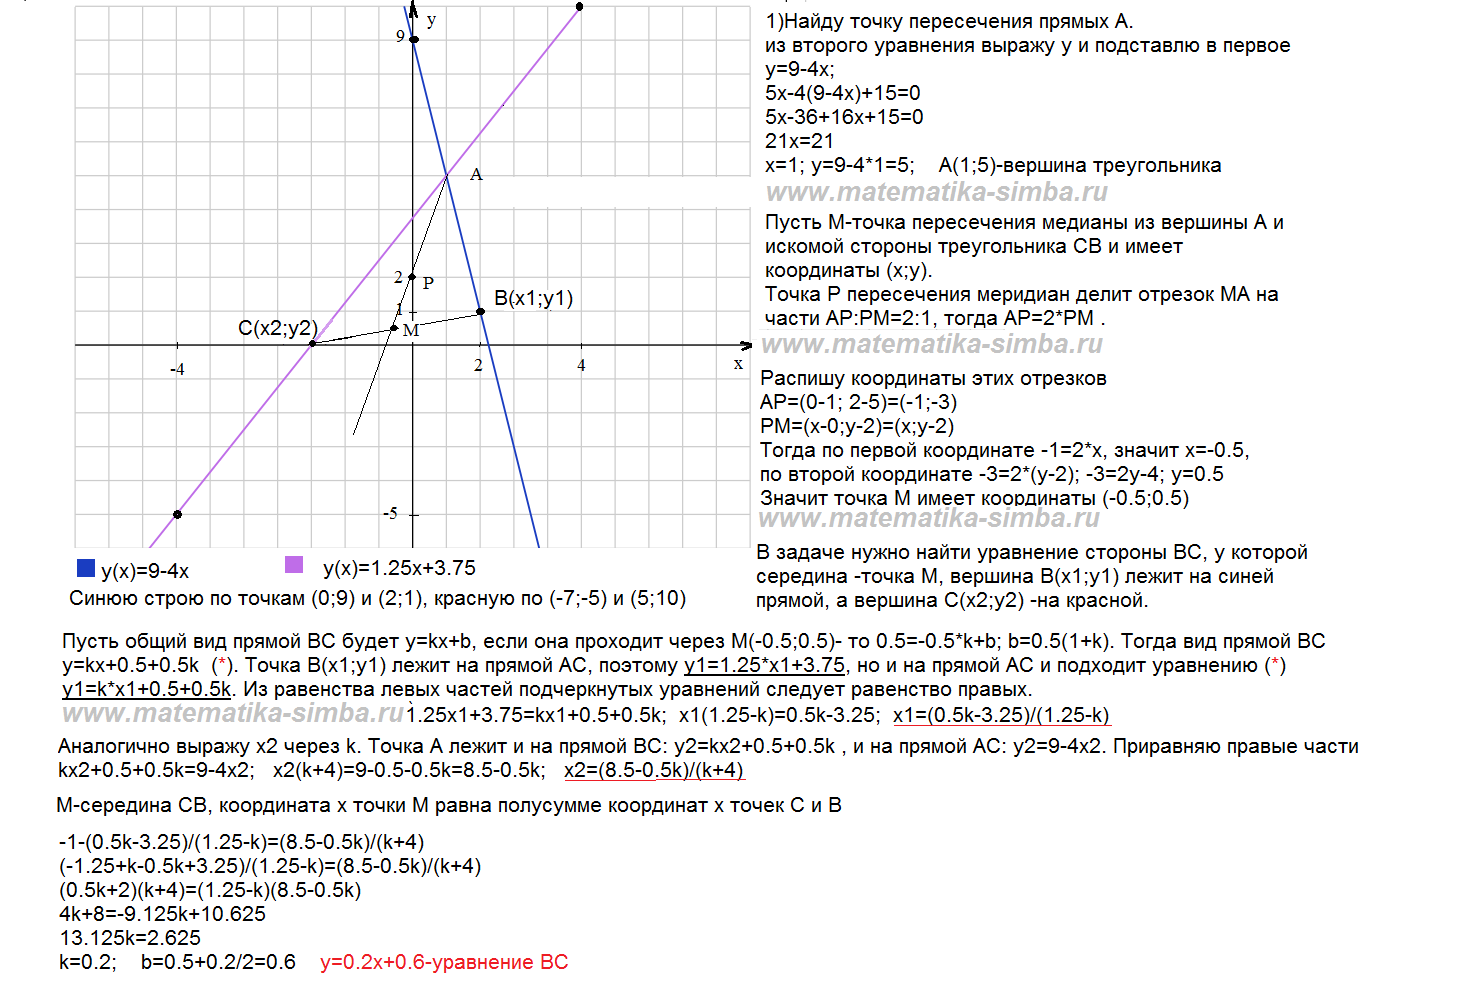 Найдите координаты точки пересечения прямой y 9. Уравнение сторон треугольника. Составления уравнения сторон. Даны уравнения сторон треугольника. Уравнение стороны через координаты.